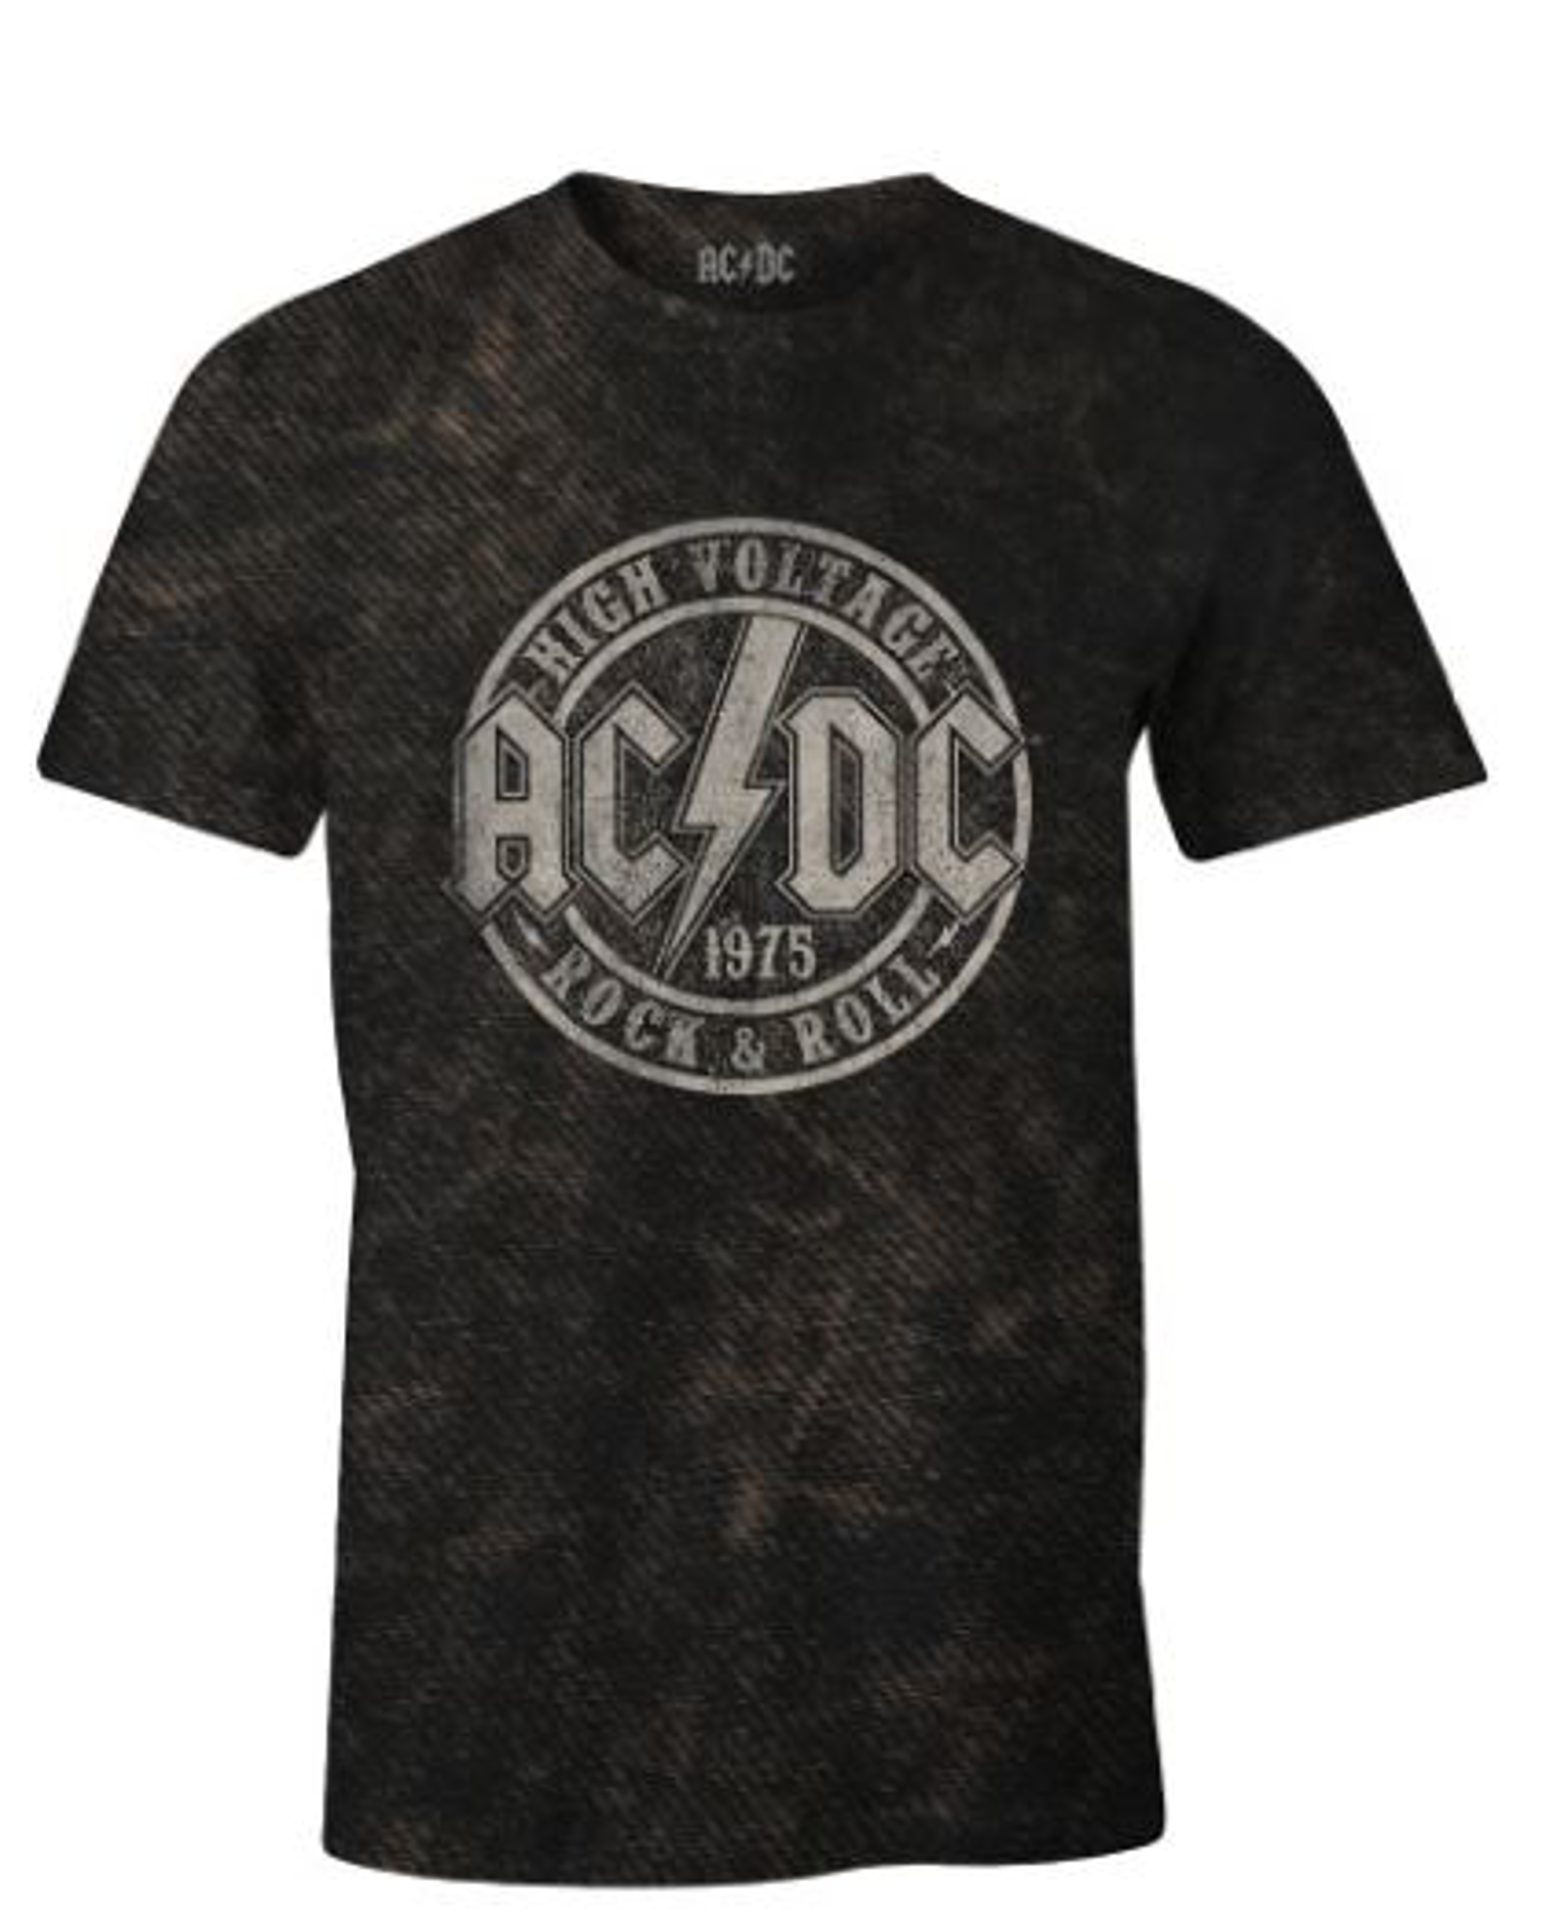 ACDC - T-shirt Noir Hommes Rock & Roll 1975 - XL